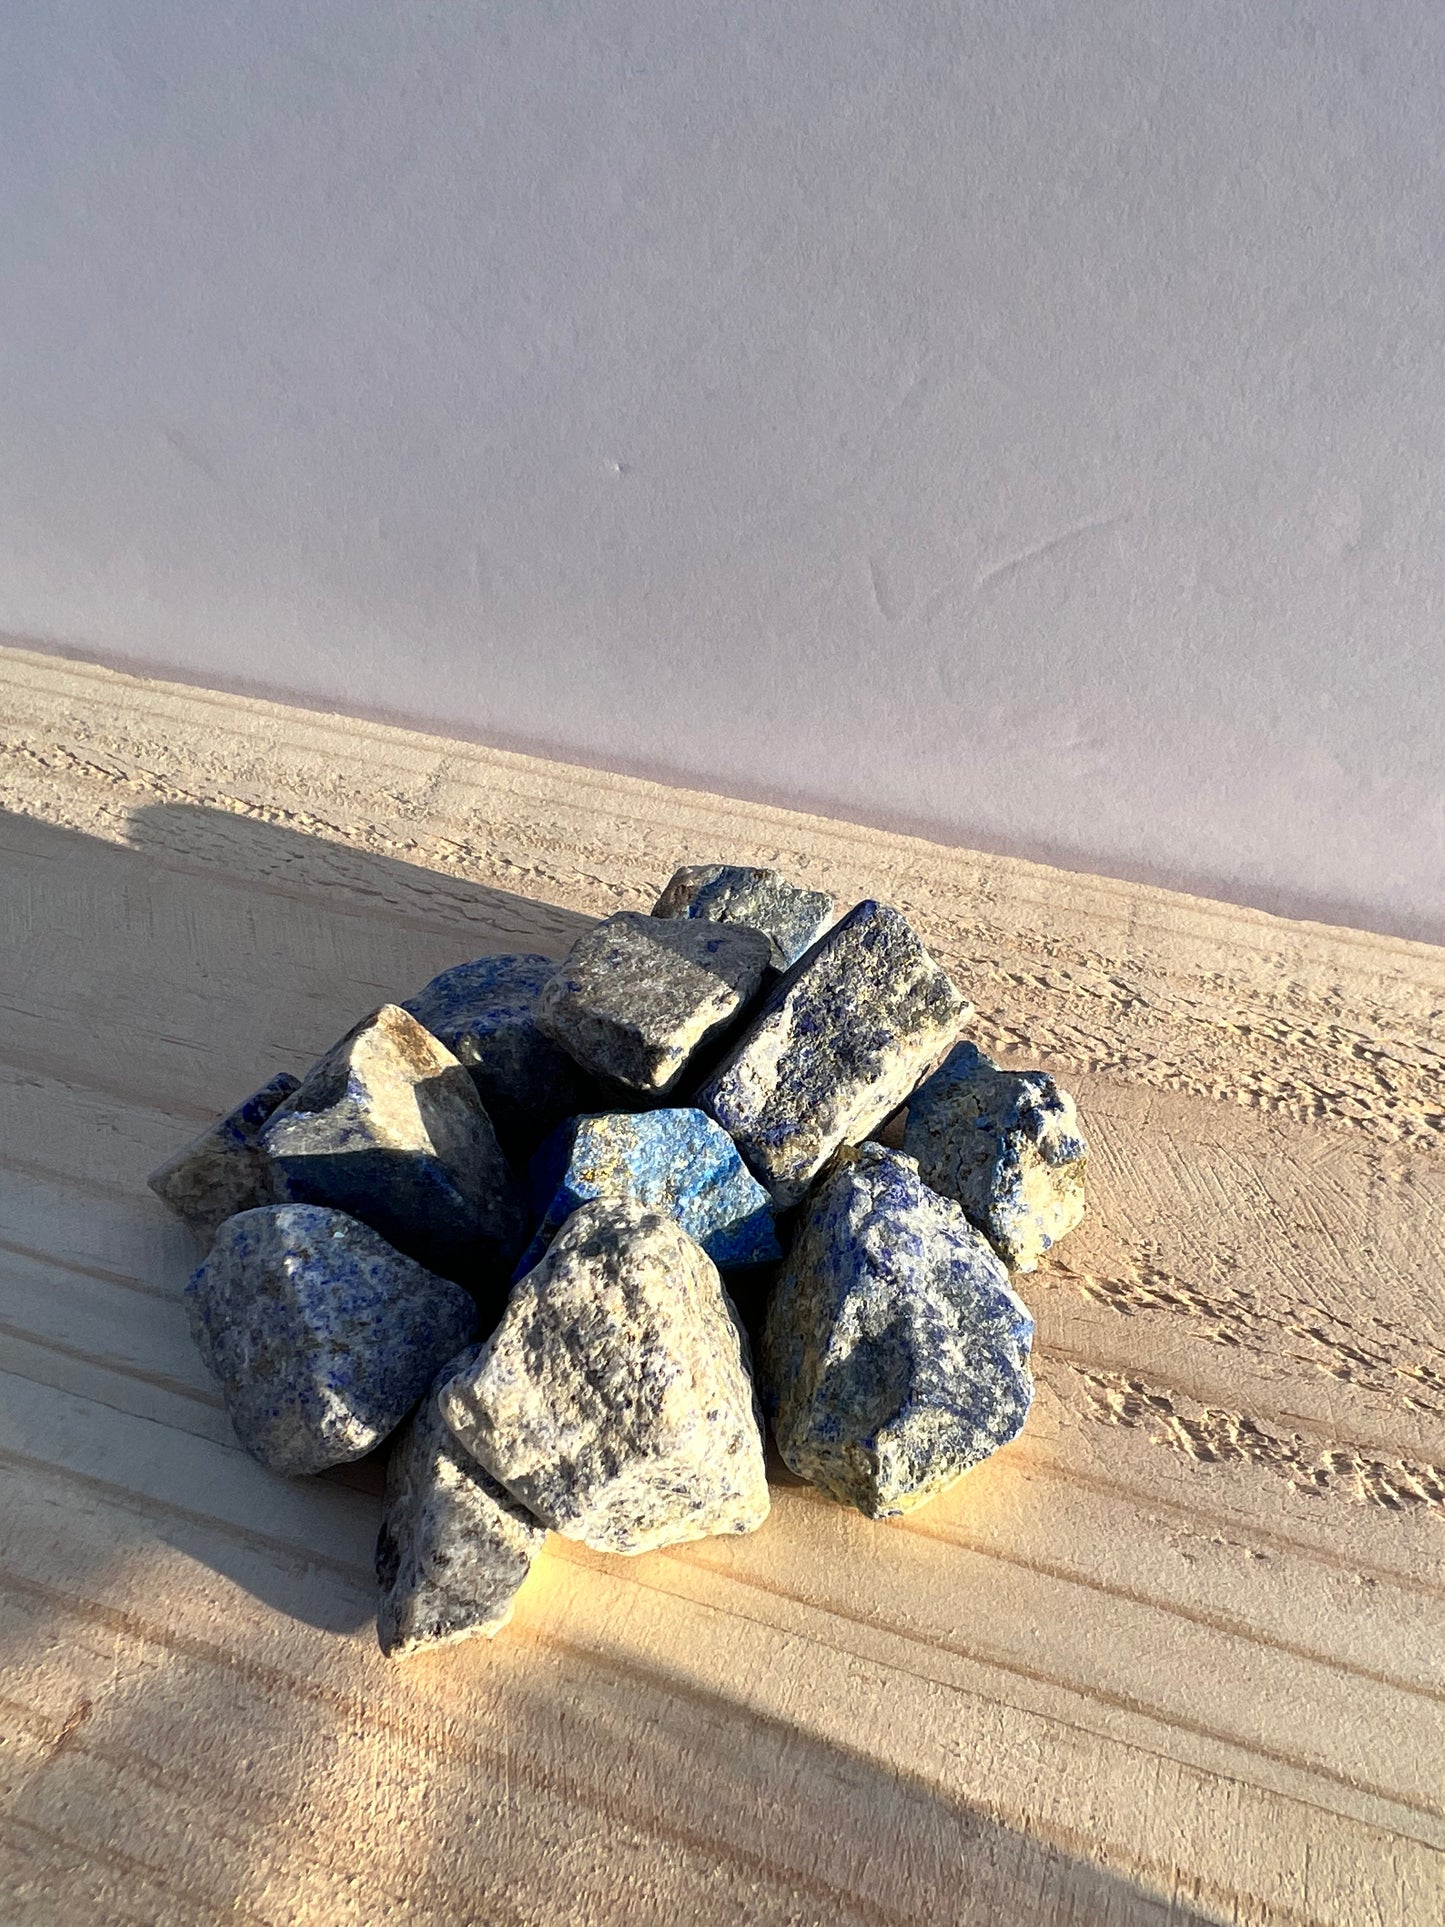 Raw lapis lazuli in the sun